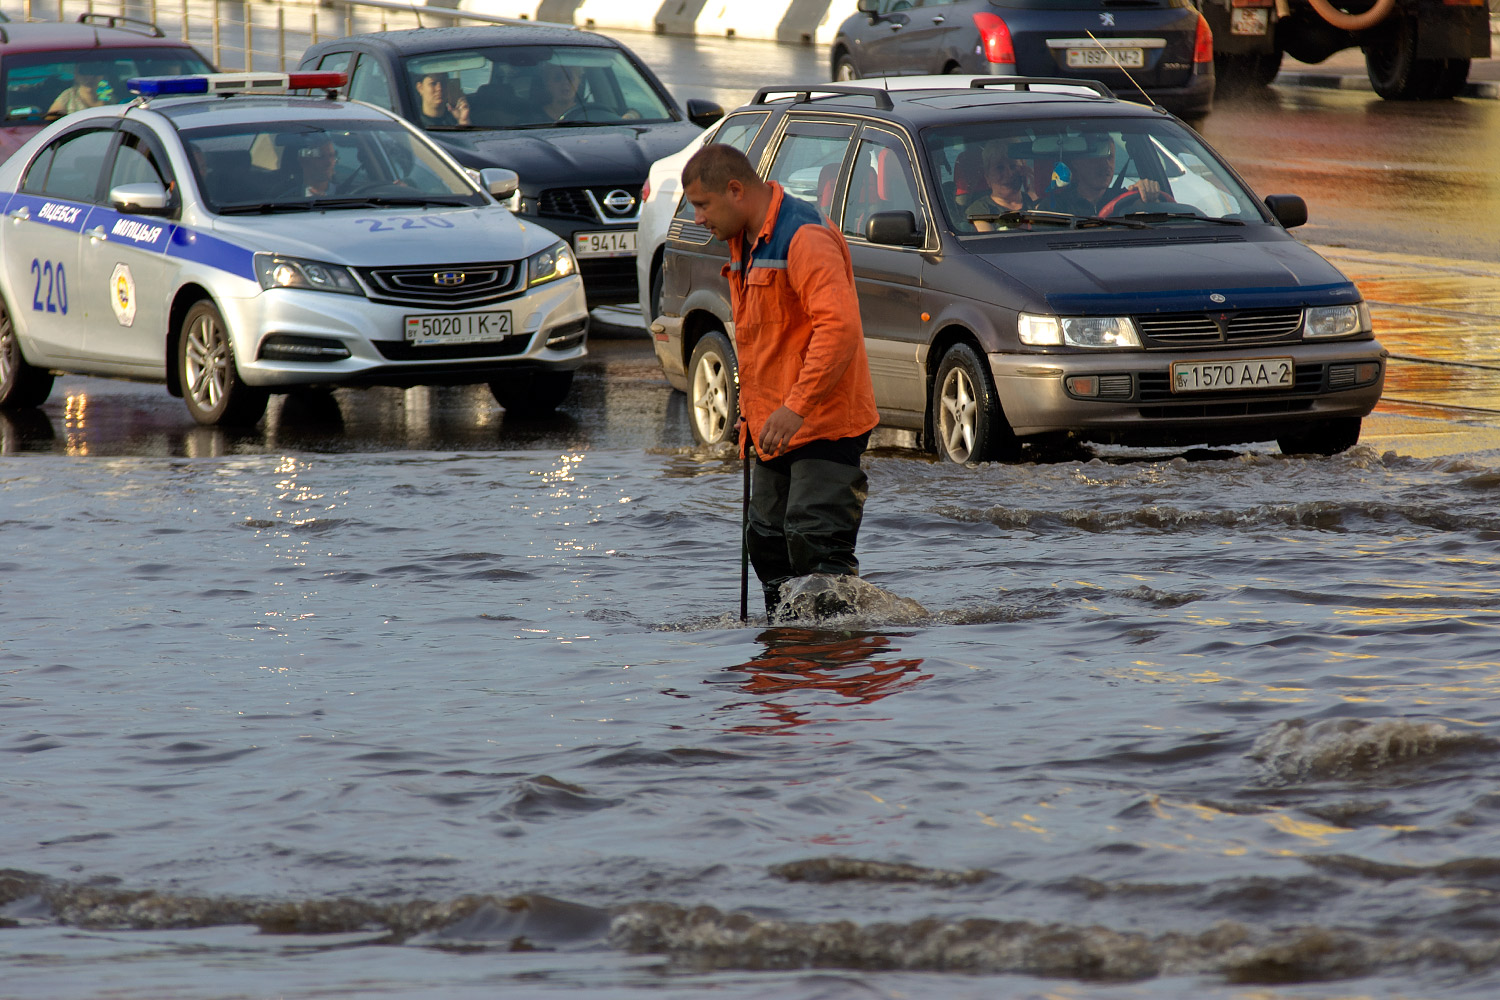 Мощнейший ливень вызвал потоп в Витебске.  Улица Космонавтов. Фото Сергея Серебро